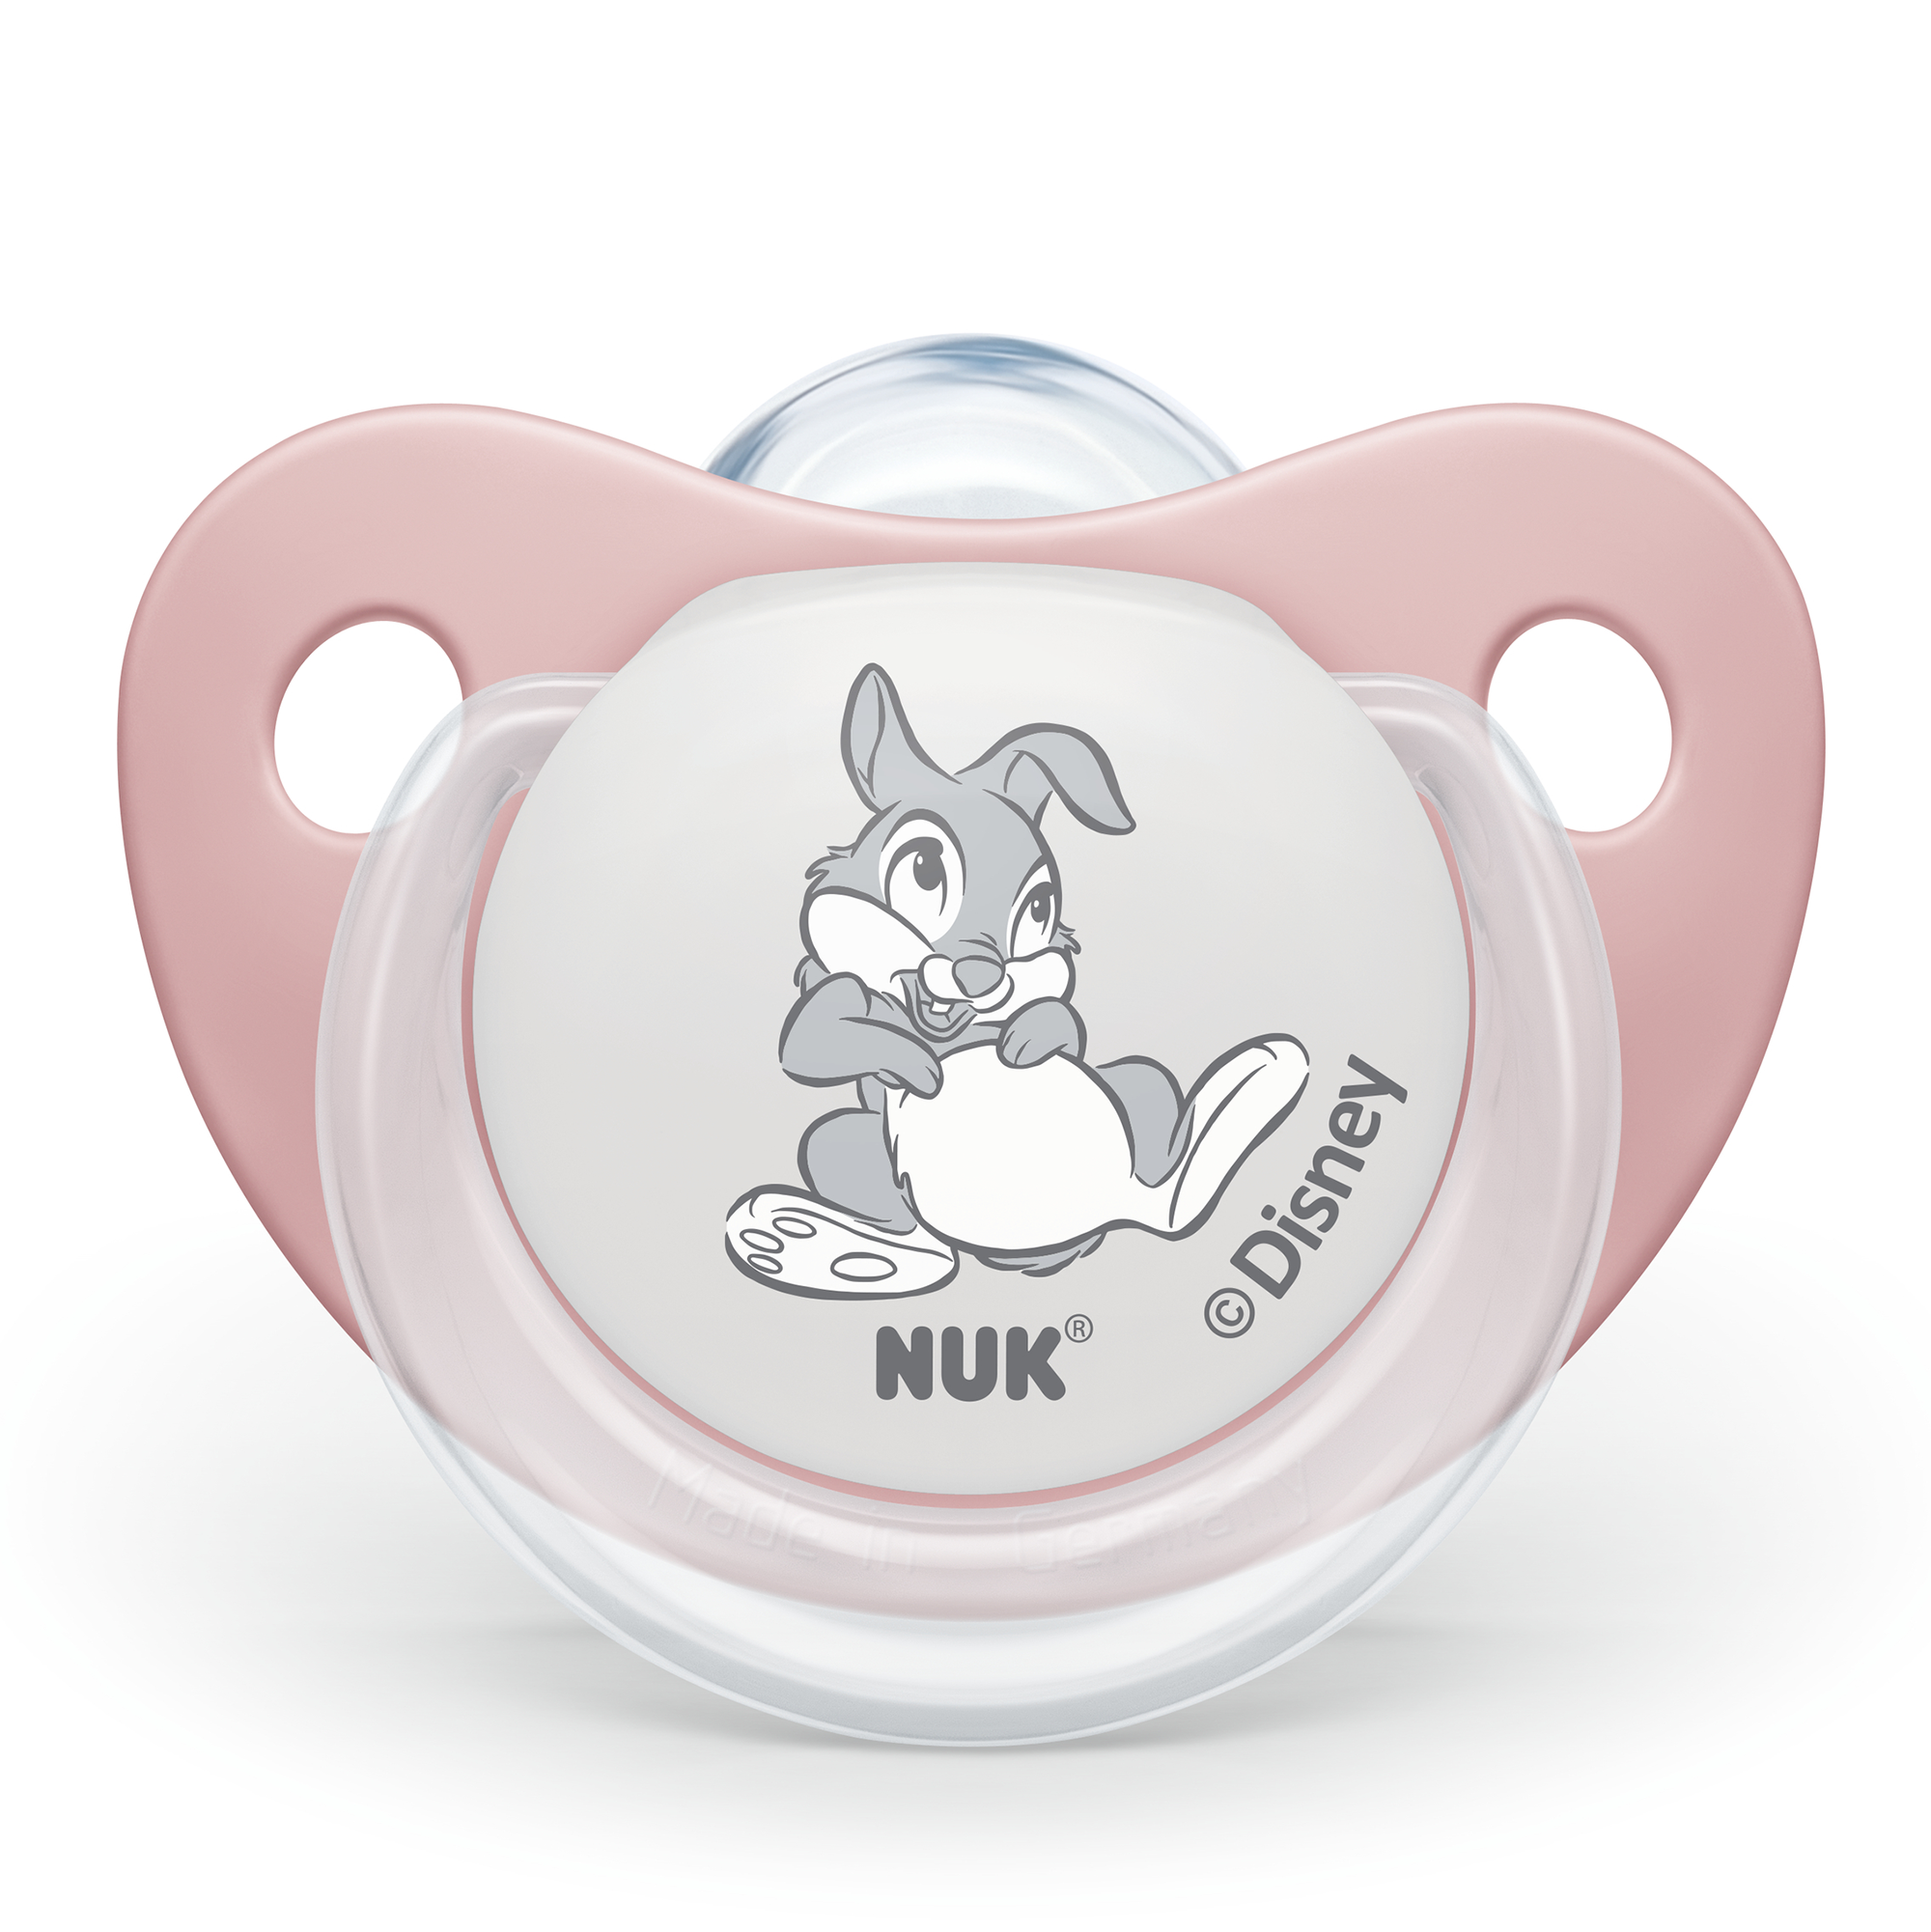 Beruhigungssauger Disney Bambi 0 - 6 Monate NUK Pink Rosa 2000583057307 2